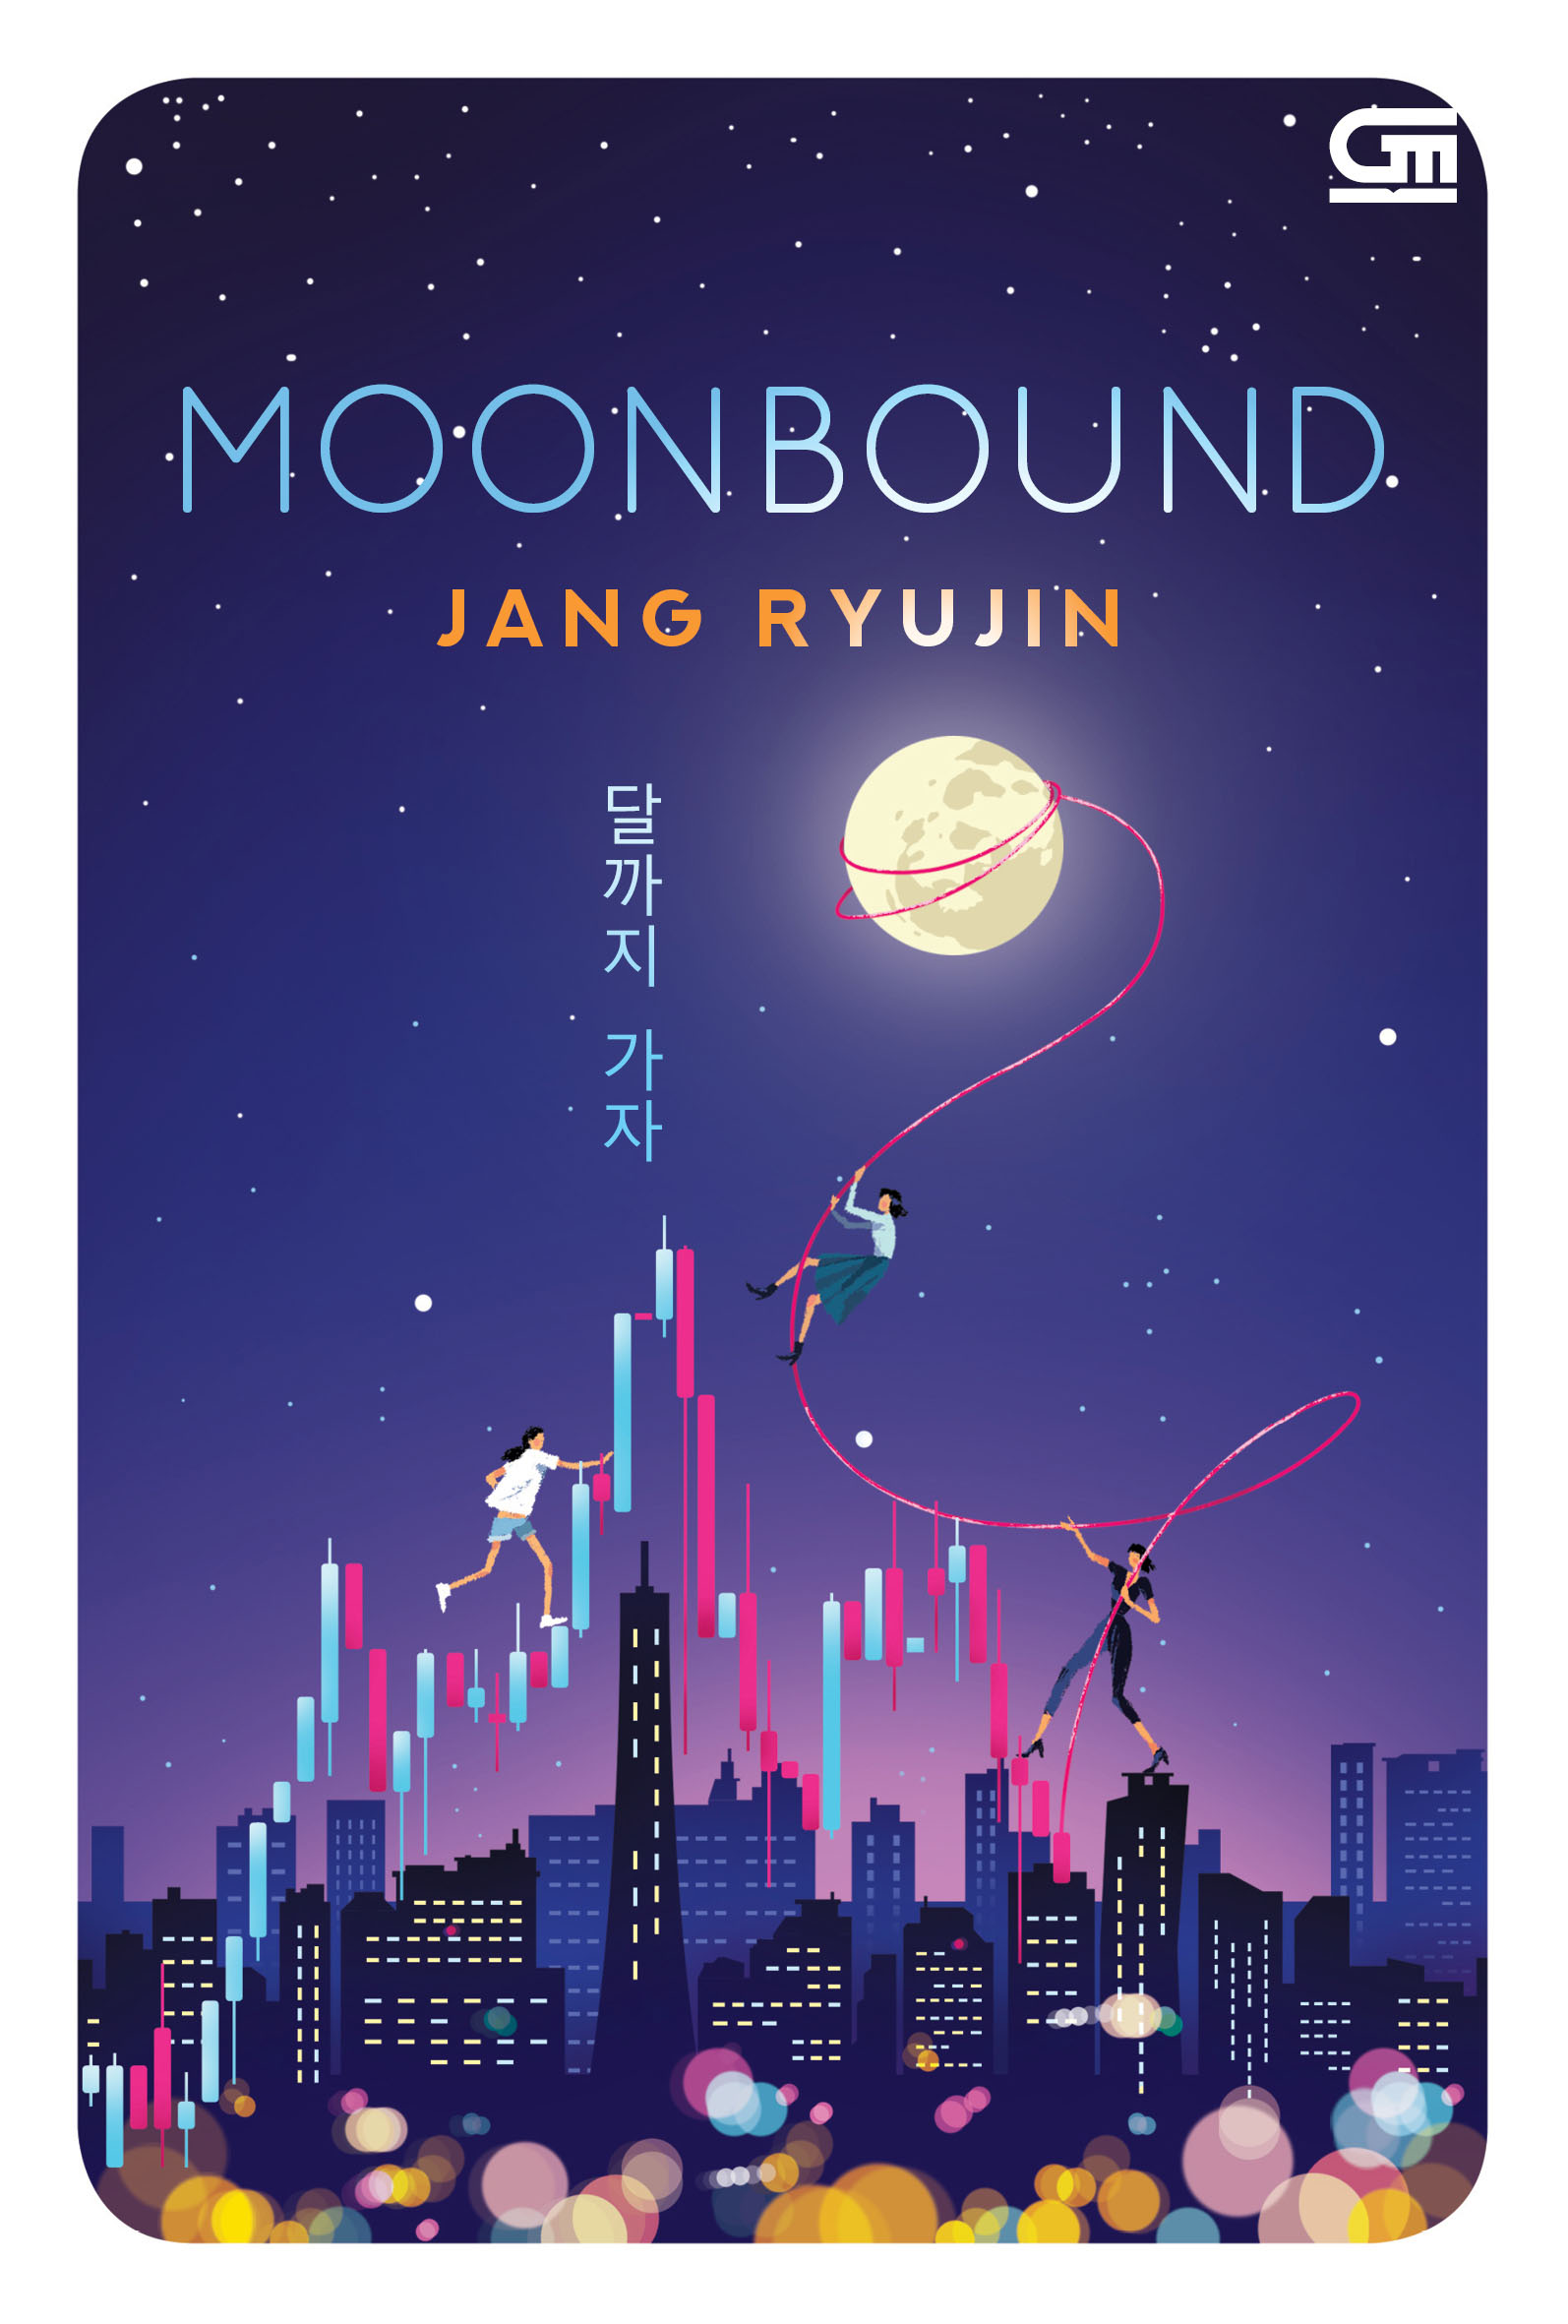 Moonbound